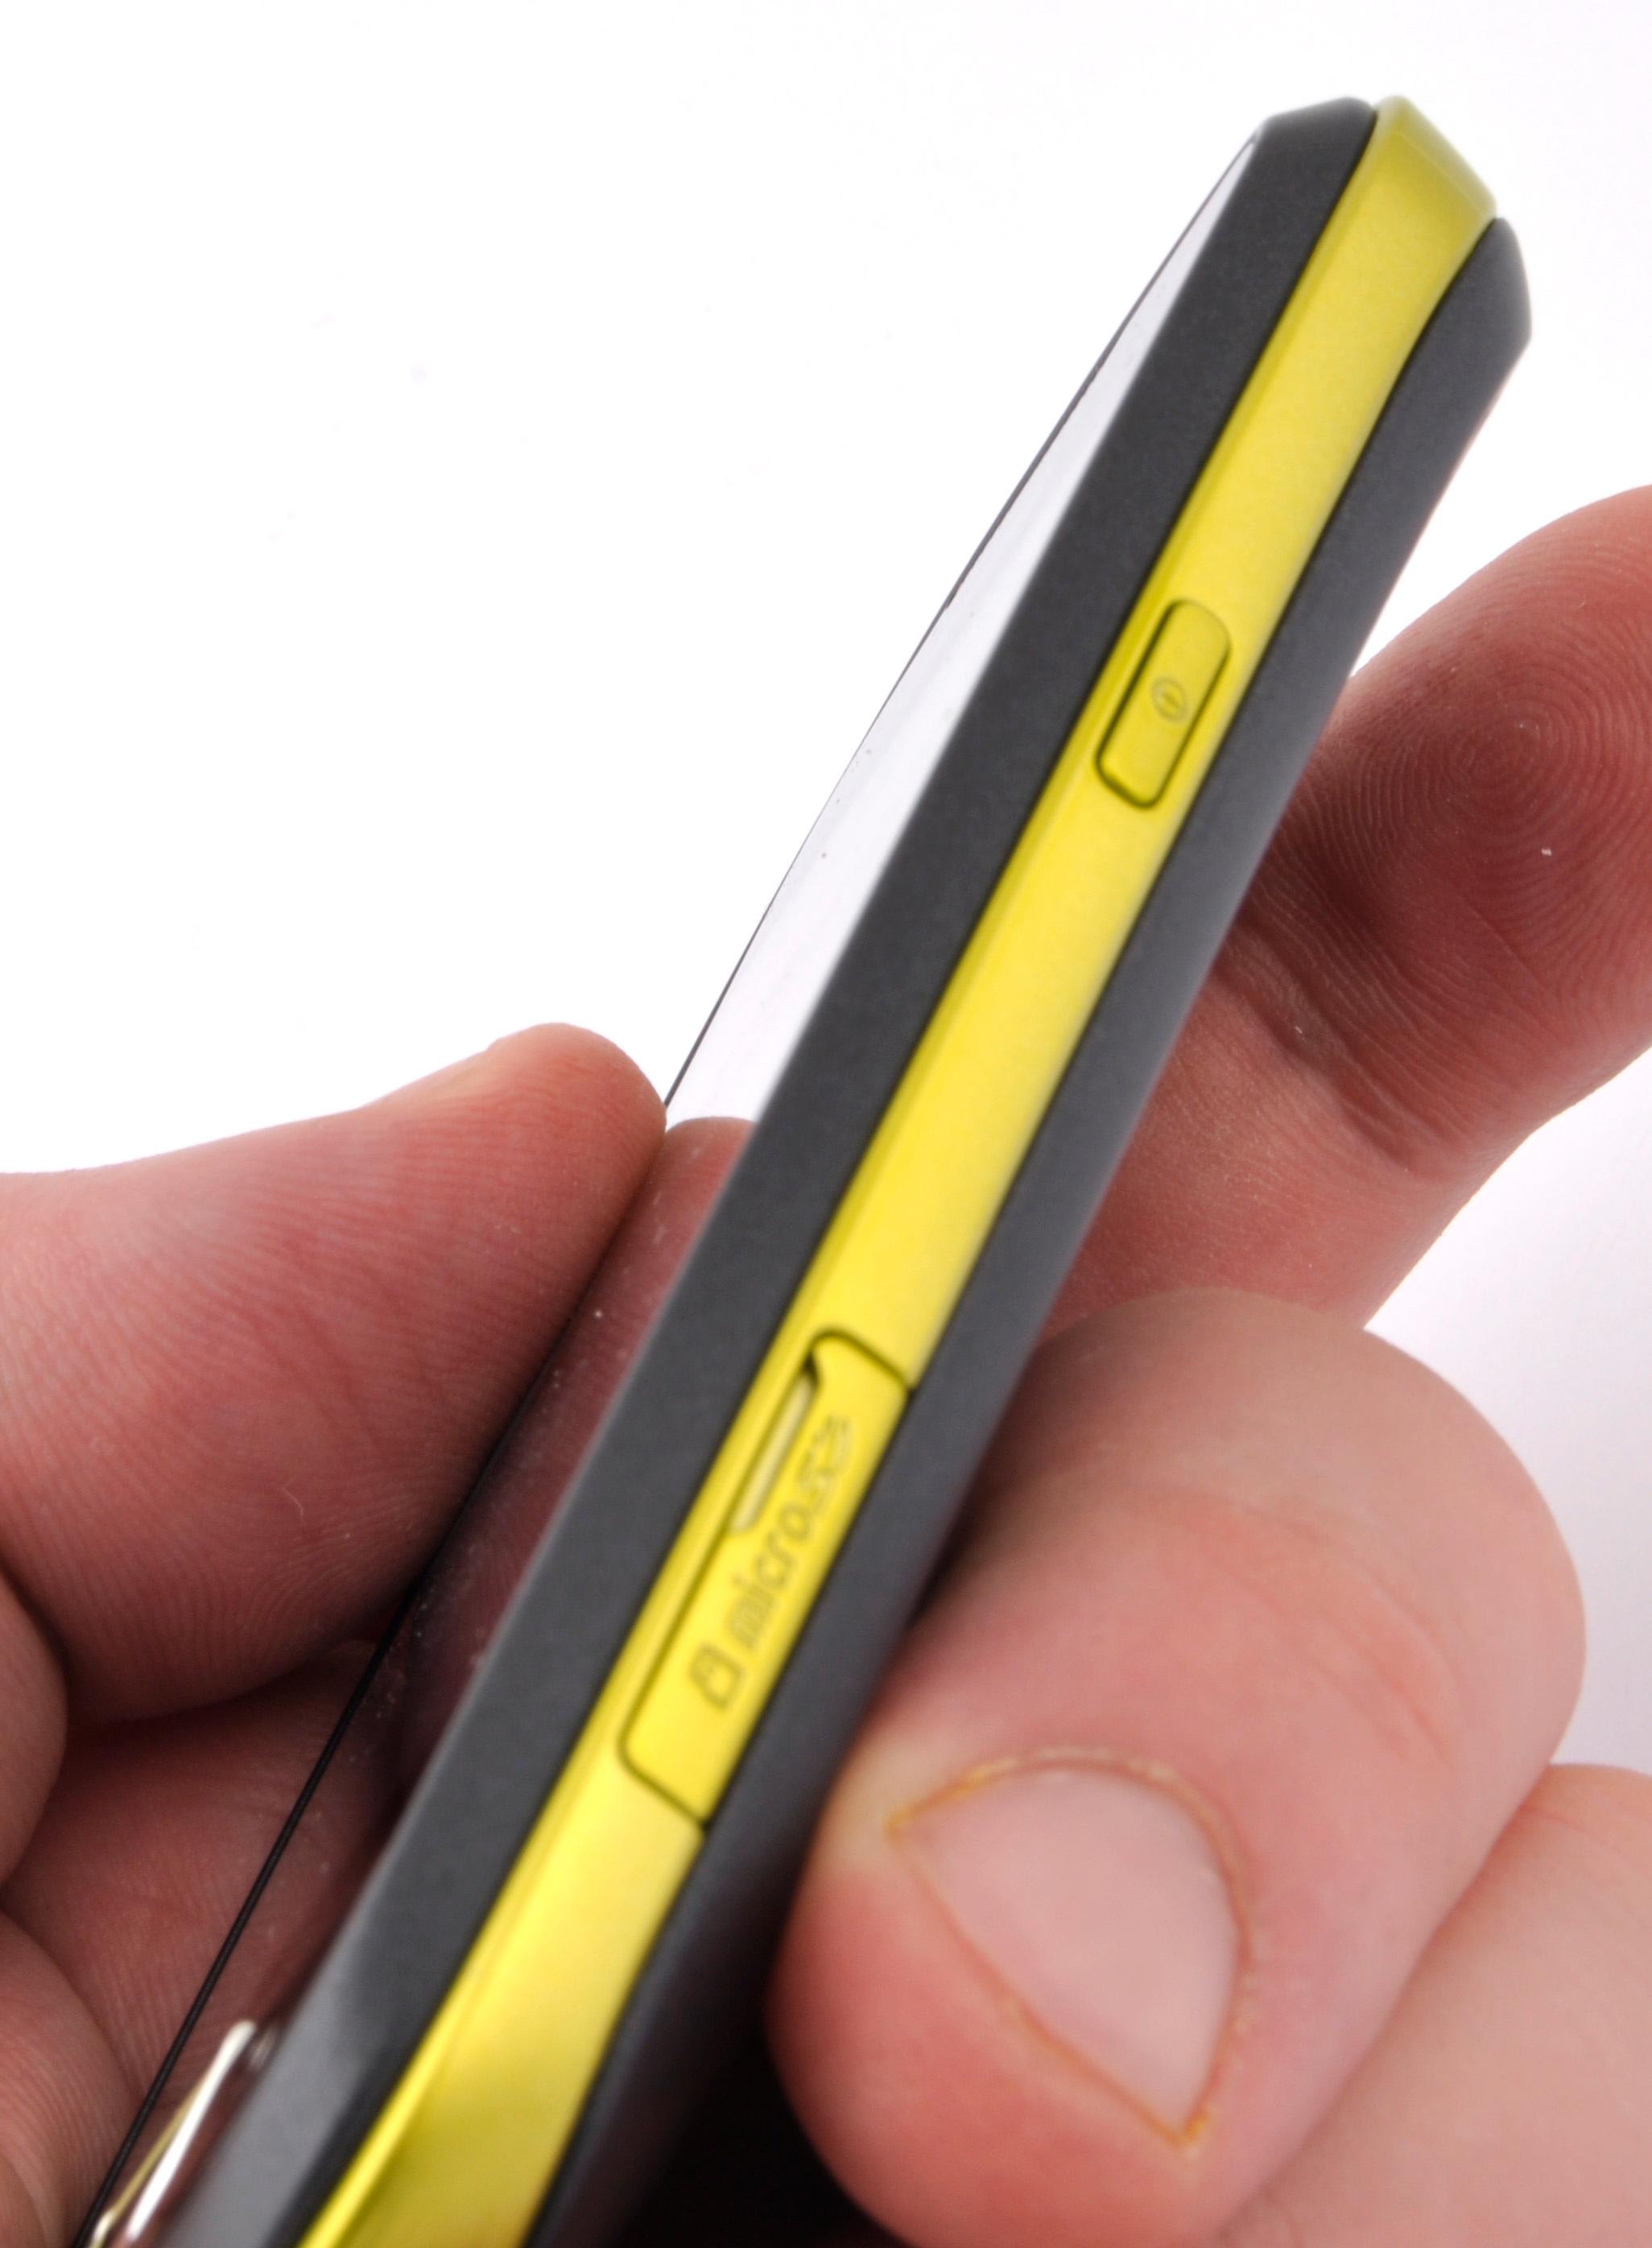 Designen med en farget stripe langs kanten gjør at Galaxy Mini ser tynnere ut enn den føles i hånden.